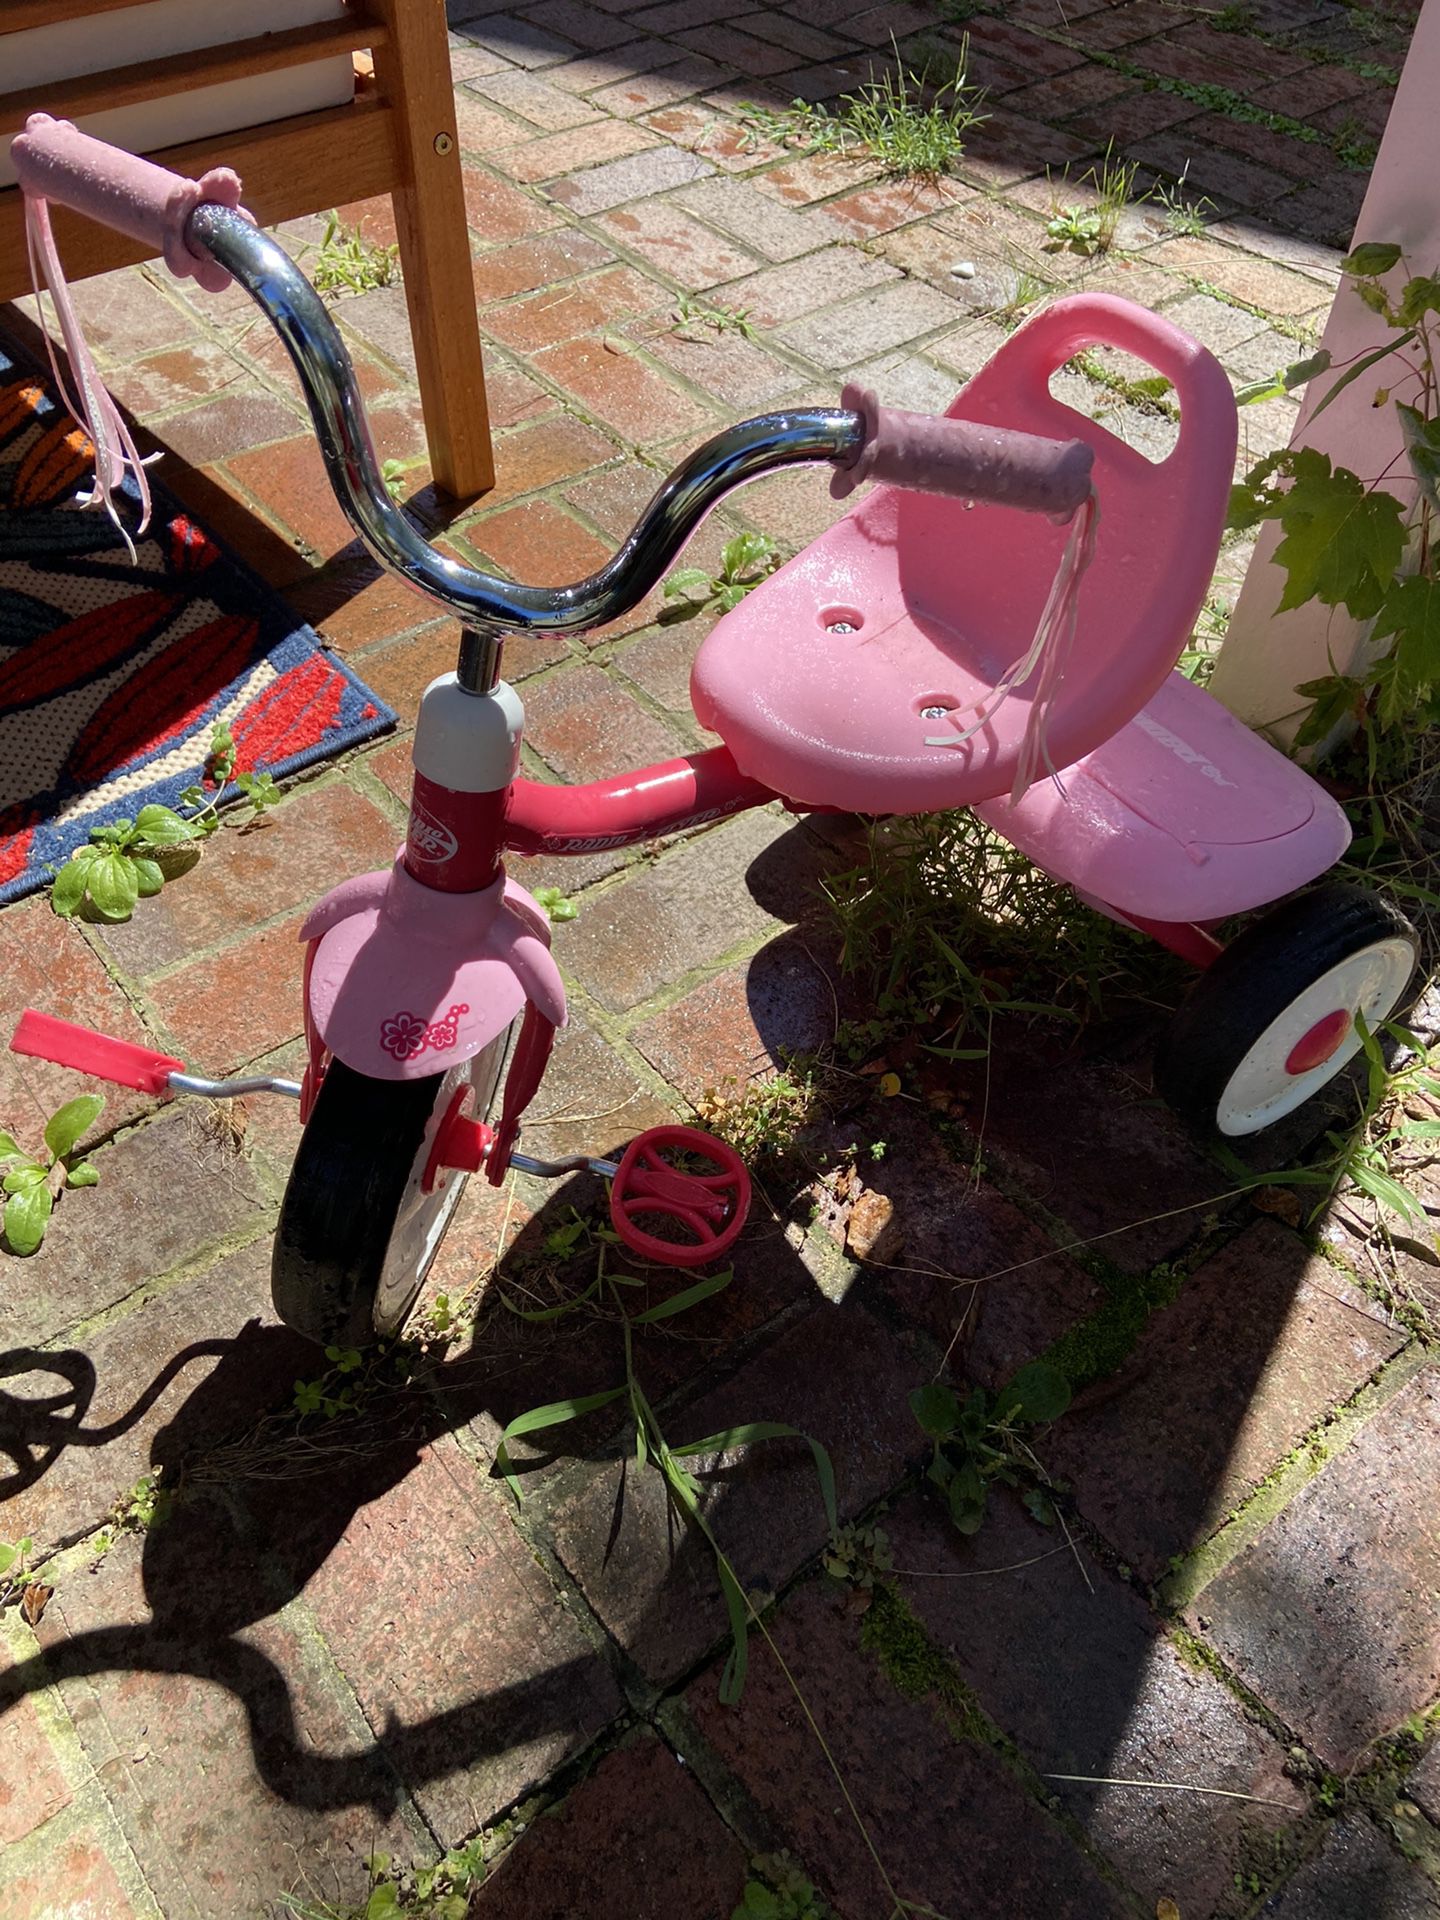 Radio Flyer toddler bike (pink)